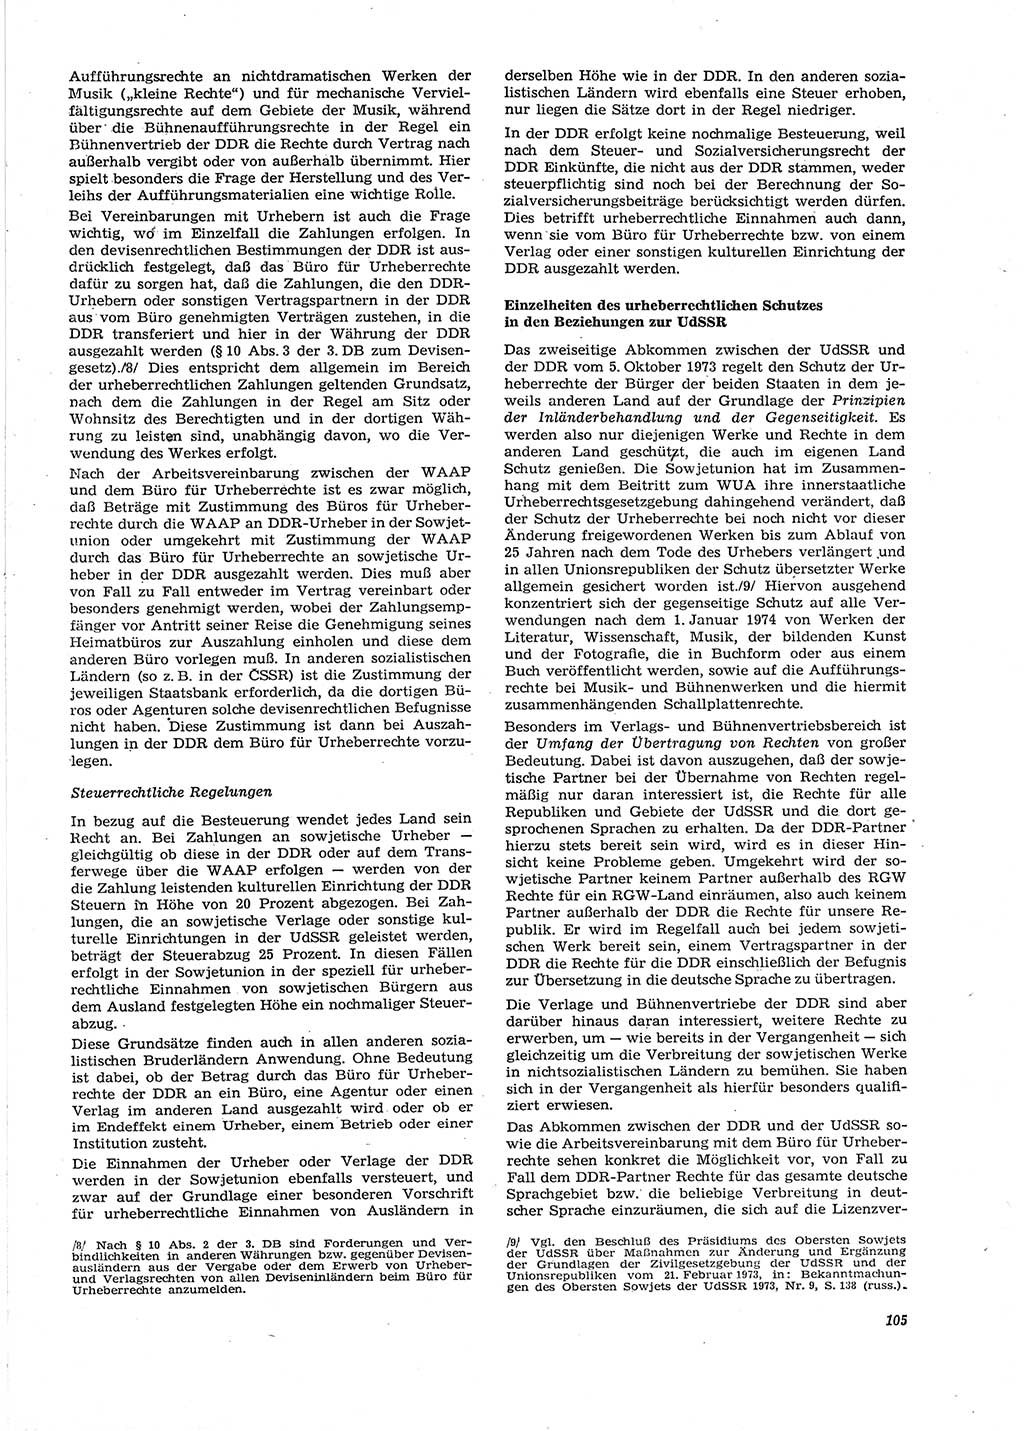 Neue Justiz (NJ), Zeitschrift für Recht und Rechtswissenschaft [Deutsche Demokratische Republik (DDR)], 29. Jahrgang 1975, Seite 105 (NJ DDR 1975, S. 105)